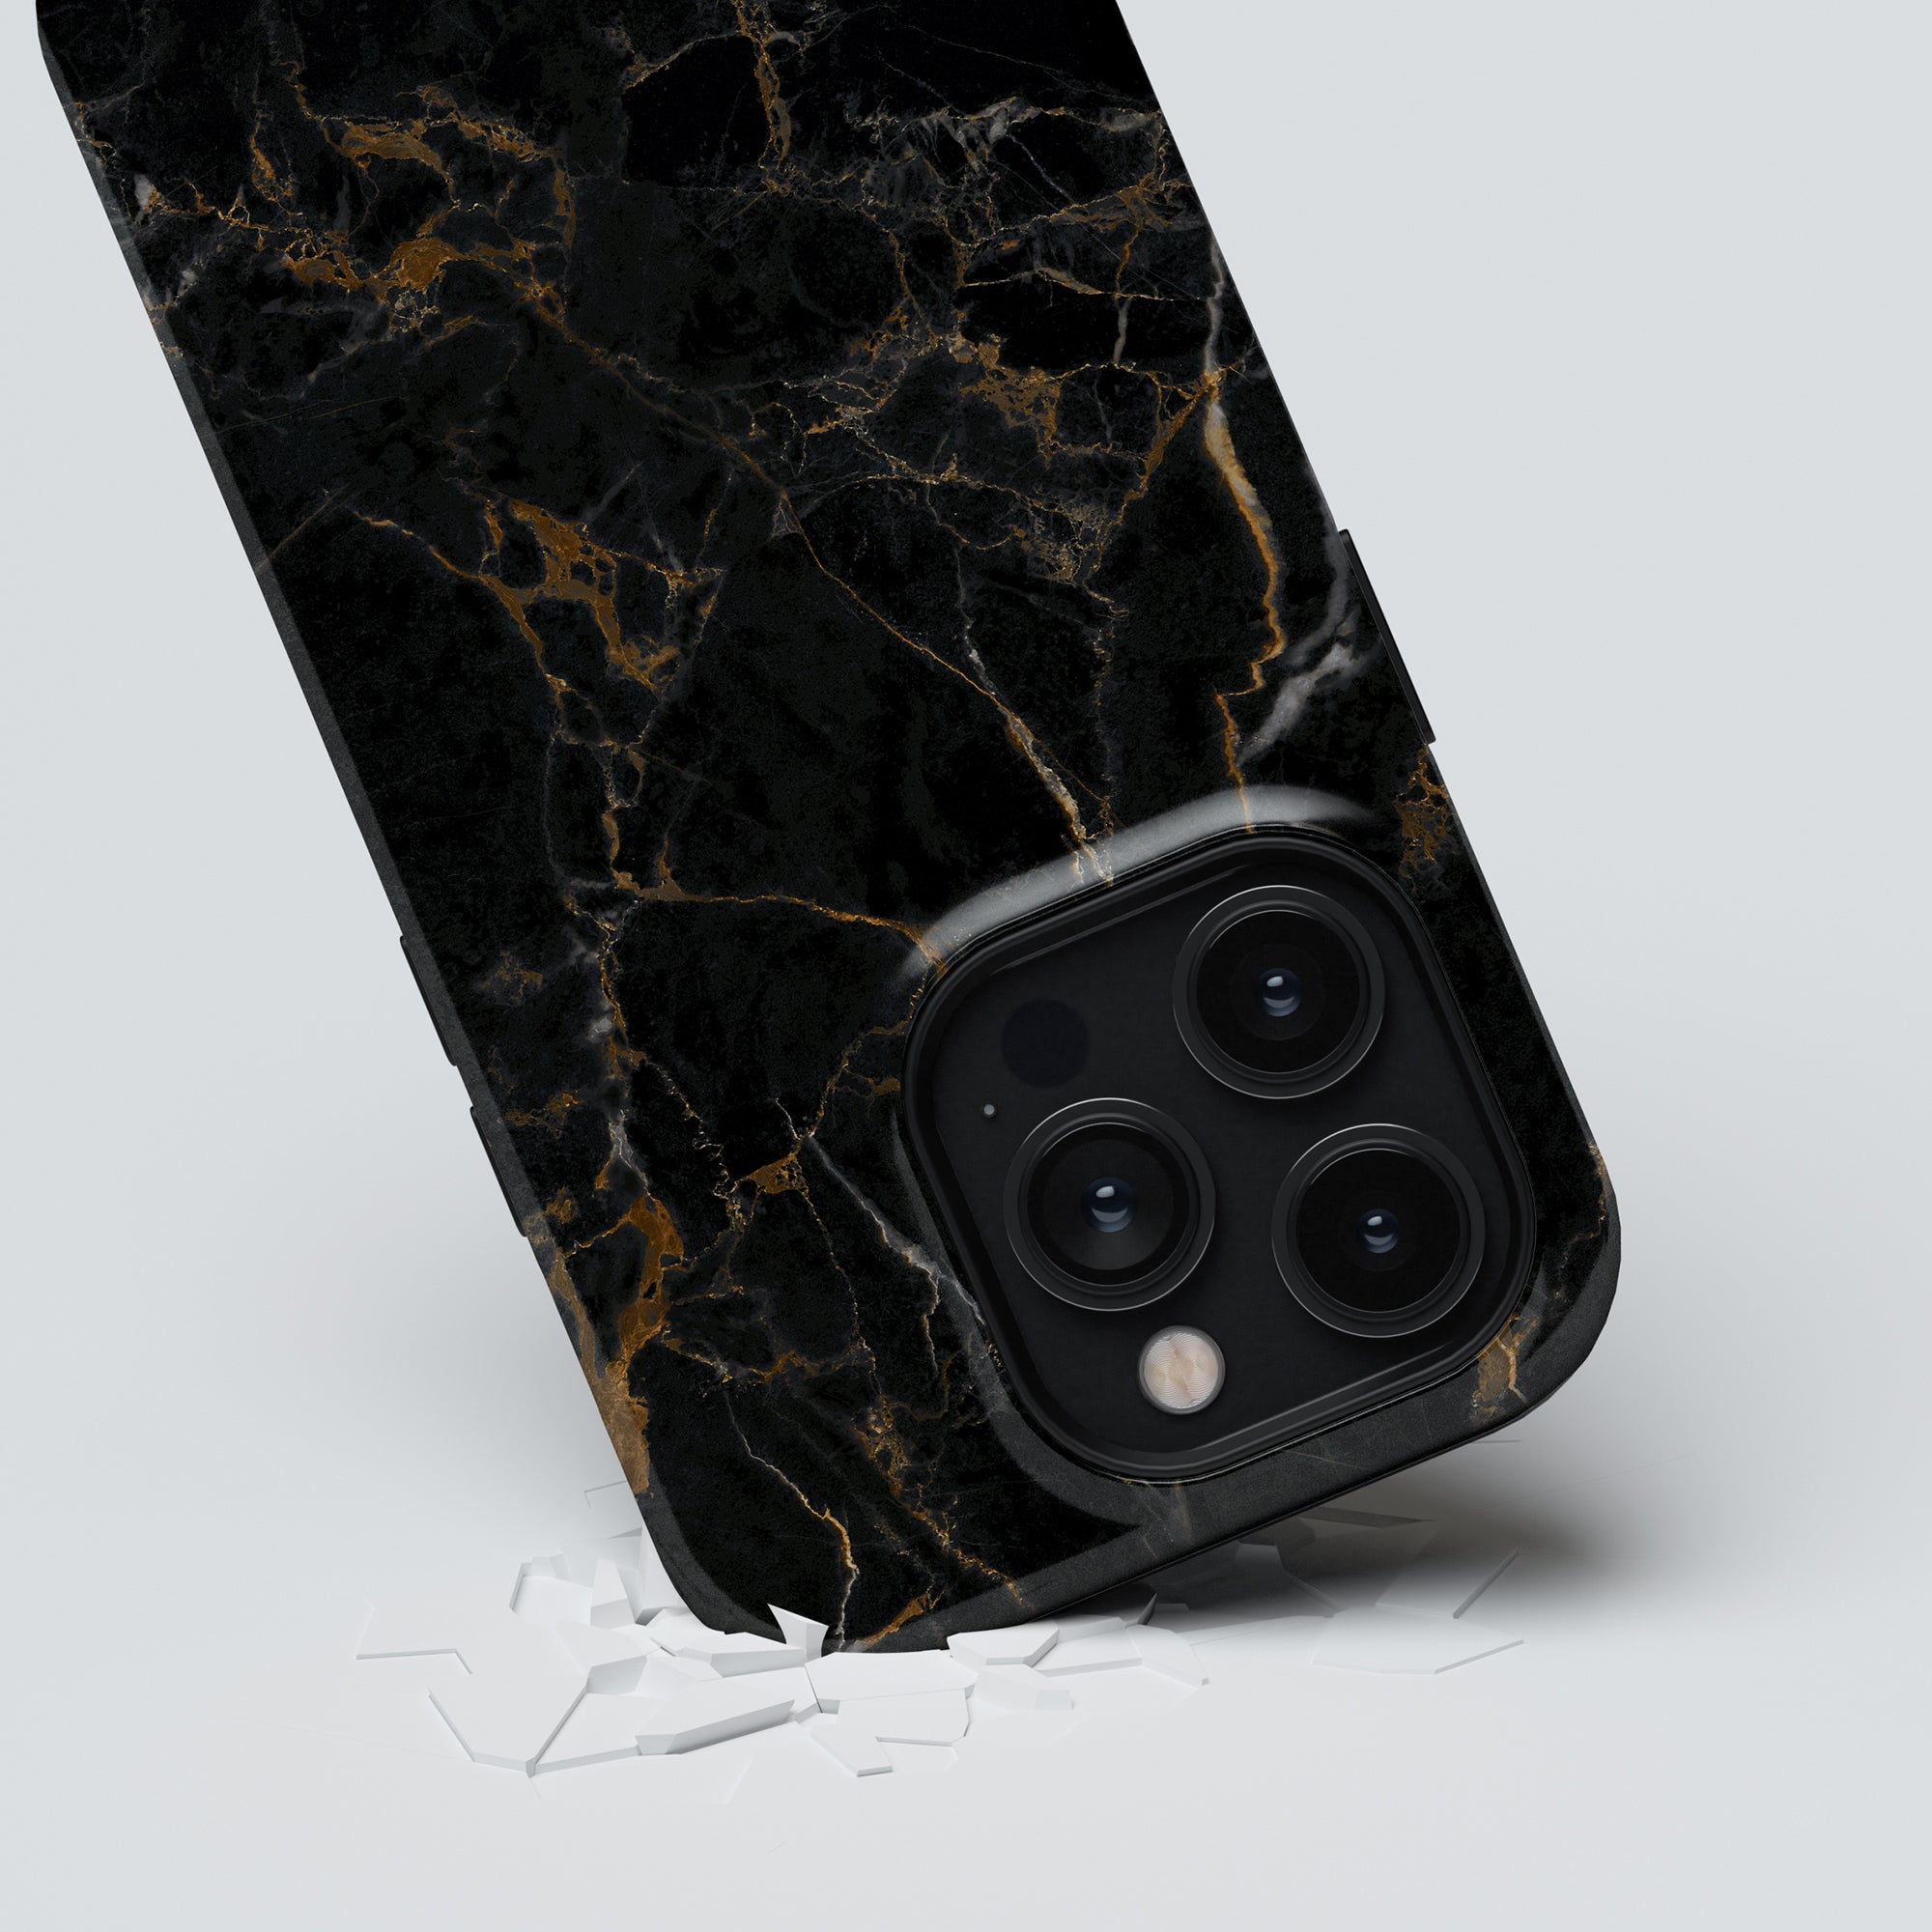 Förbättra din iPhone 11 Pro med det utsökta Portoro - Tough Case, som visar upp en modern svart- och guldmarmordesign som utstrålar naturens elegans.